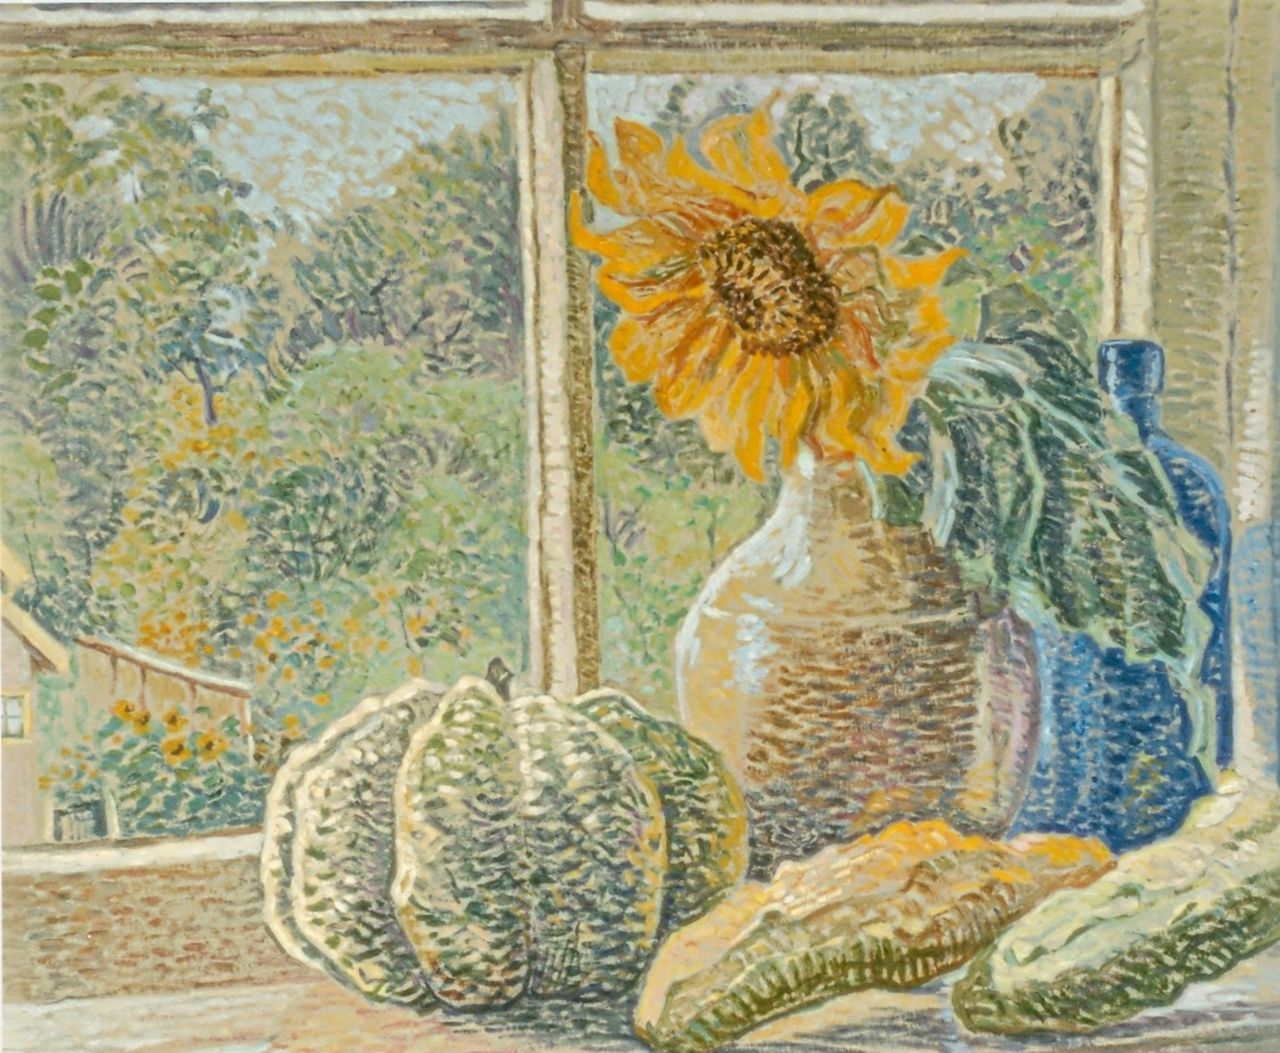 Pijpers E.E.  | 'Edith' Elizabeth Pijpers, Pompoen en vaas met zonnebloem voor een keukenraam, olieverf op papier 40,0 x 52,0 cm, gesigneerd rechtsonder